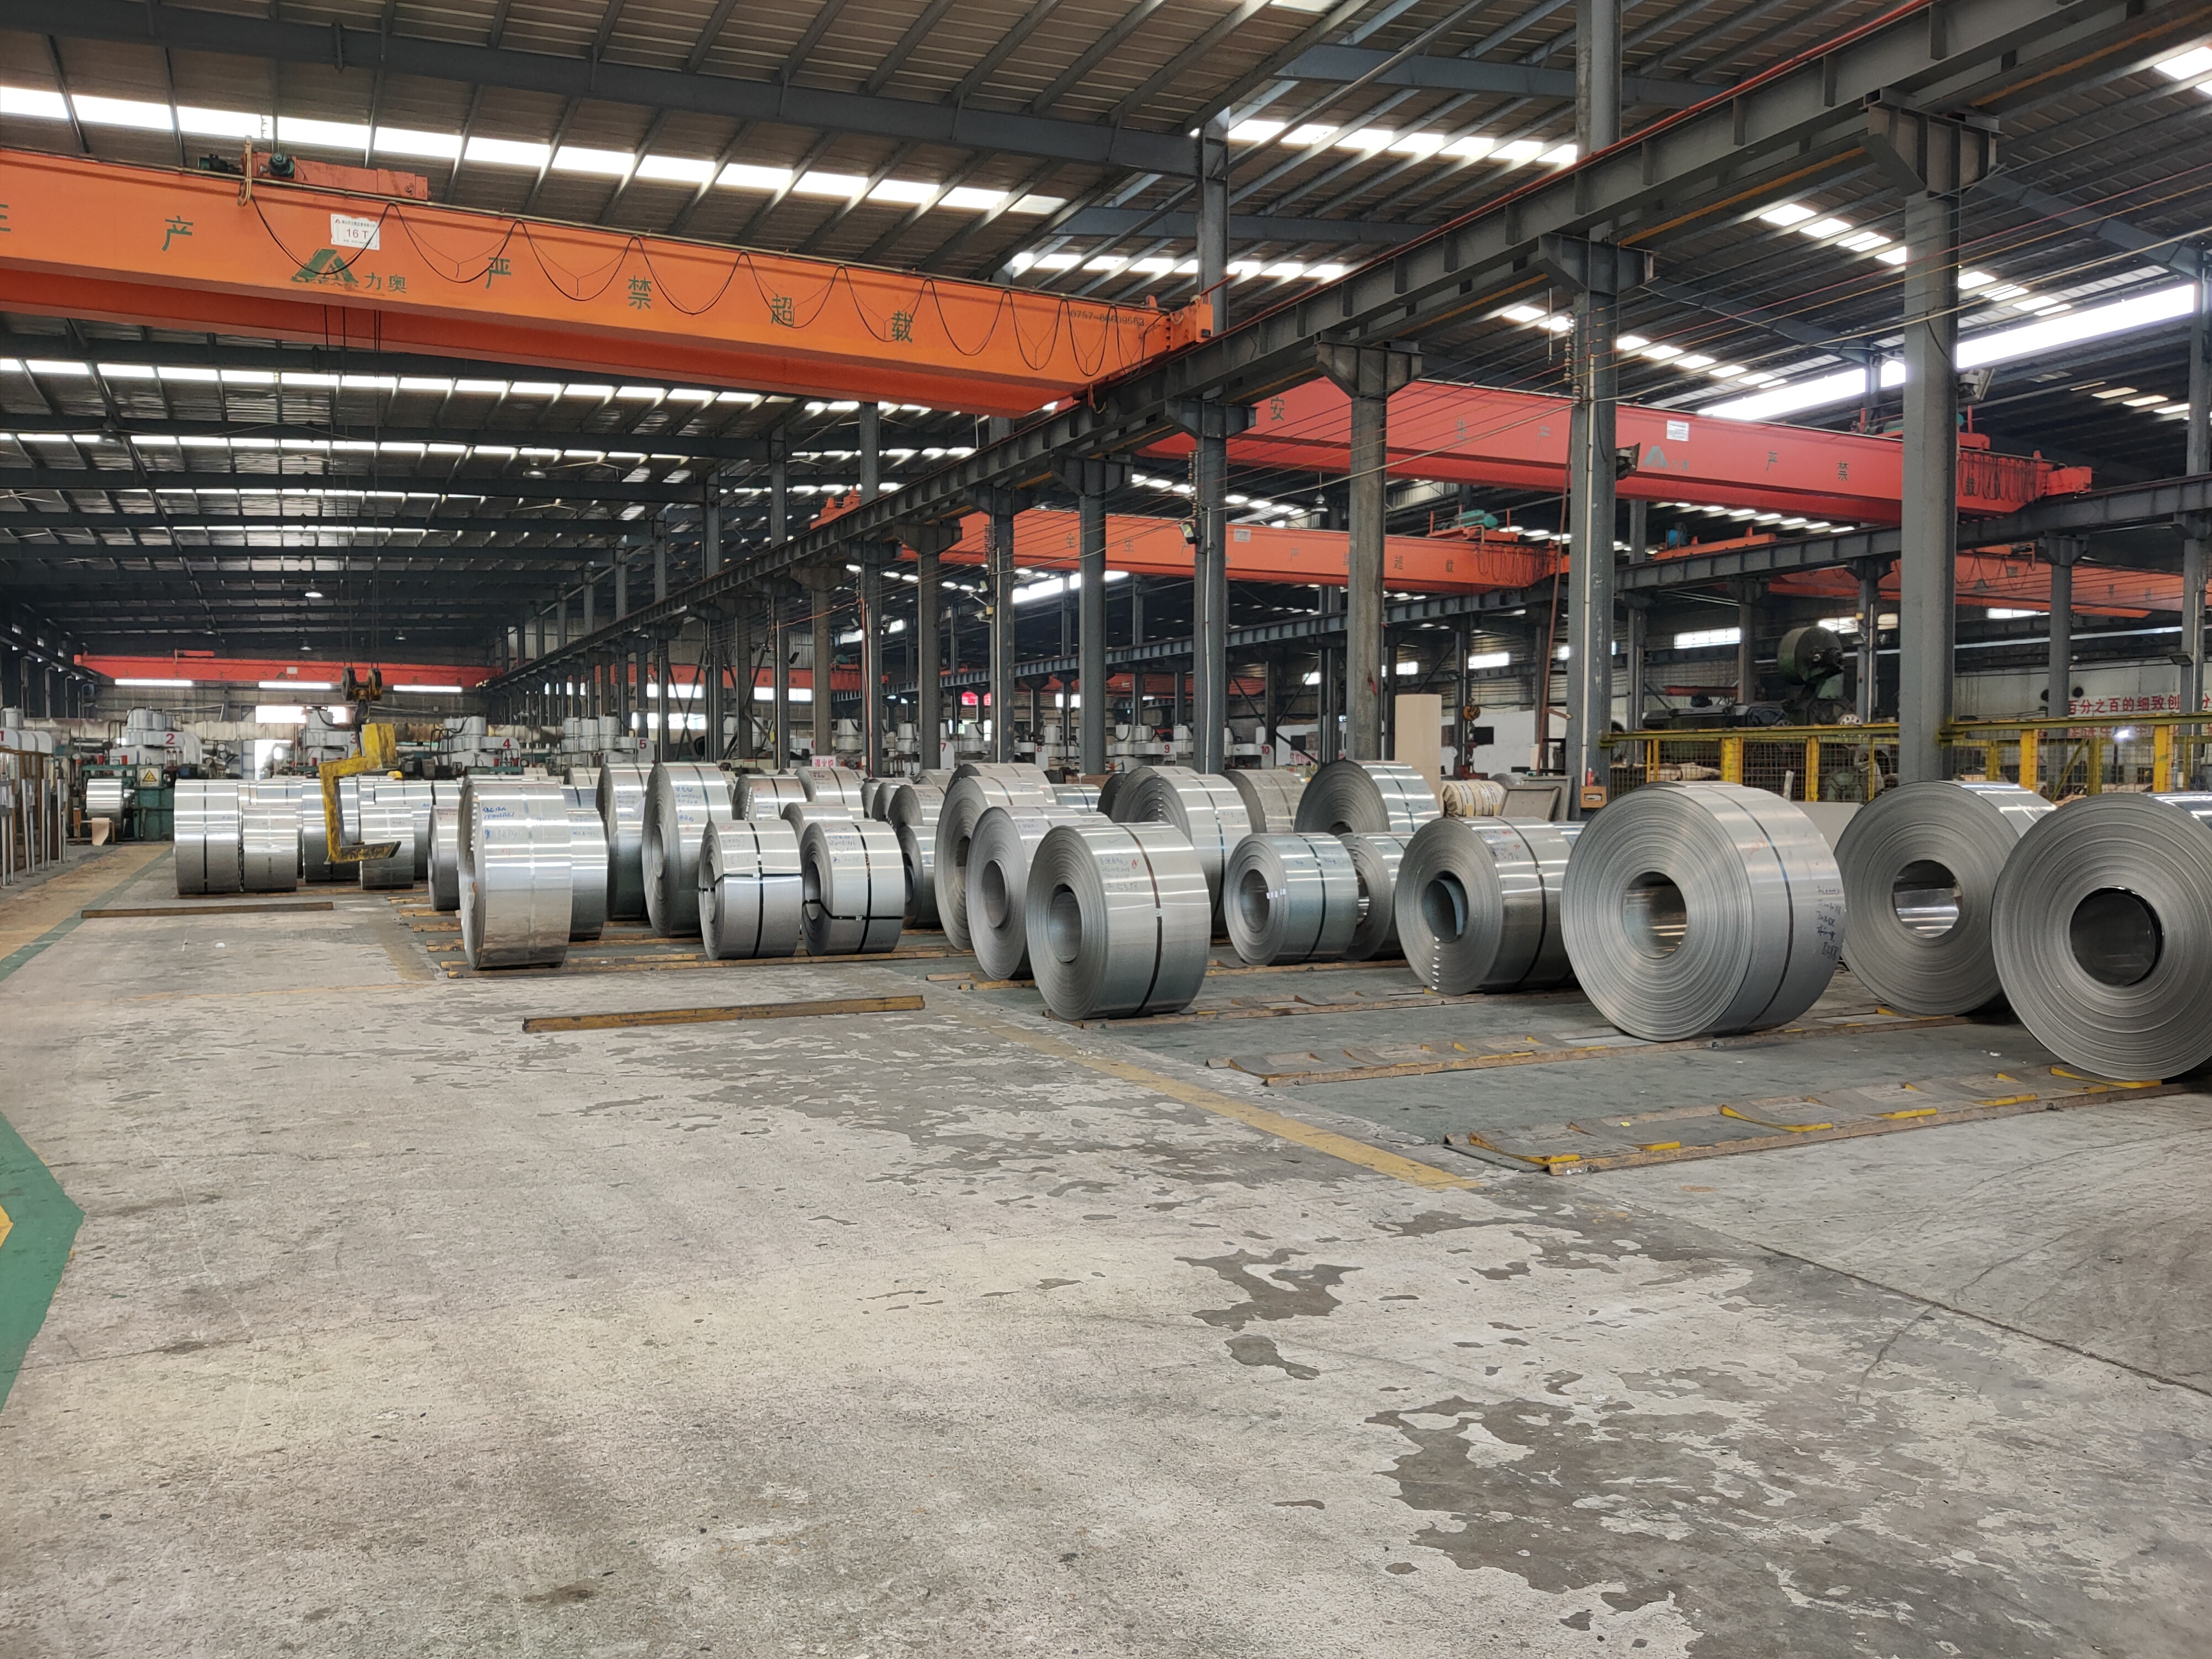 ヨーロッパのステンレス鋼工場は生産を減らし、輸出の好機